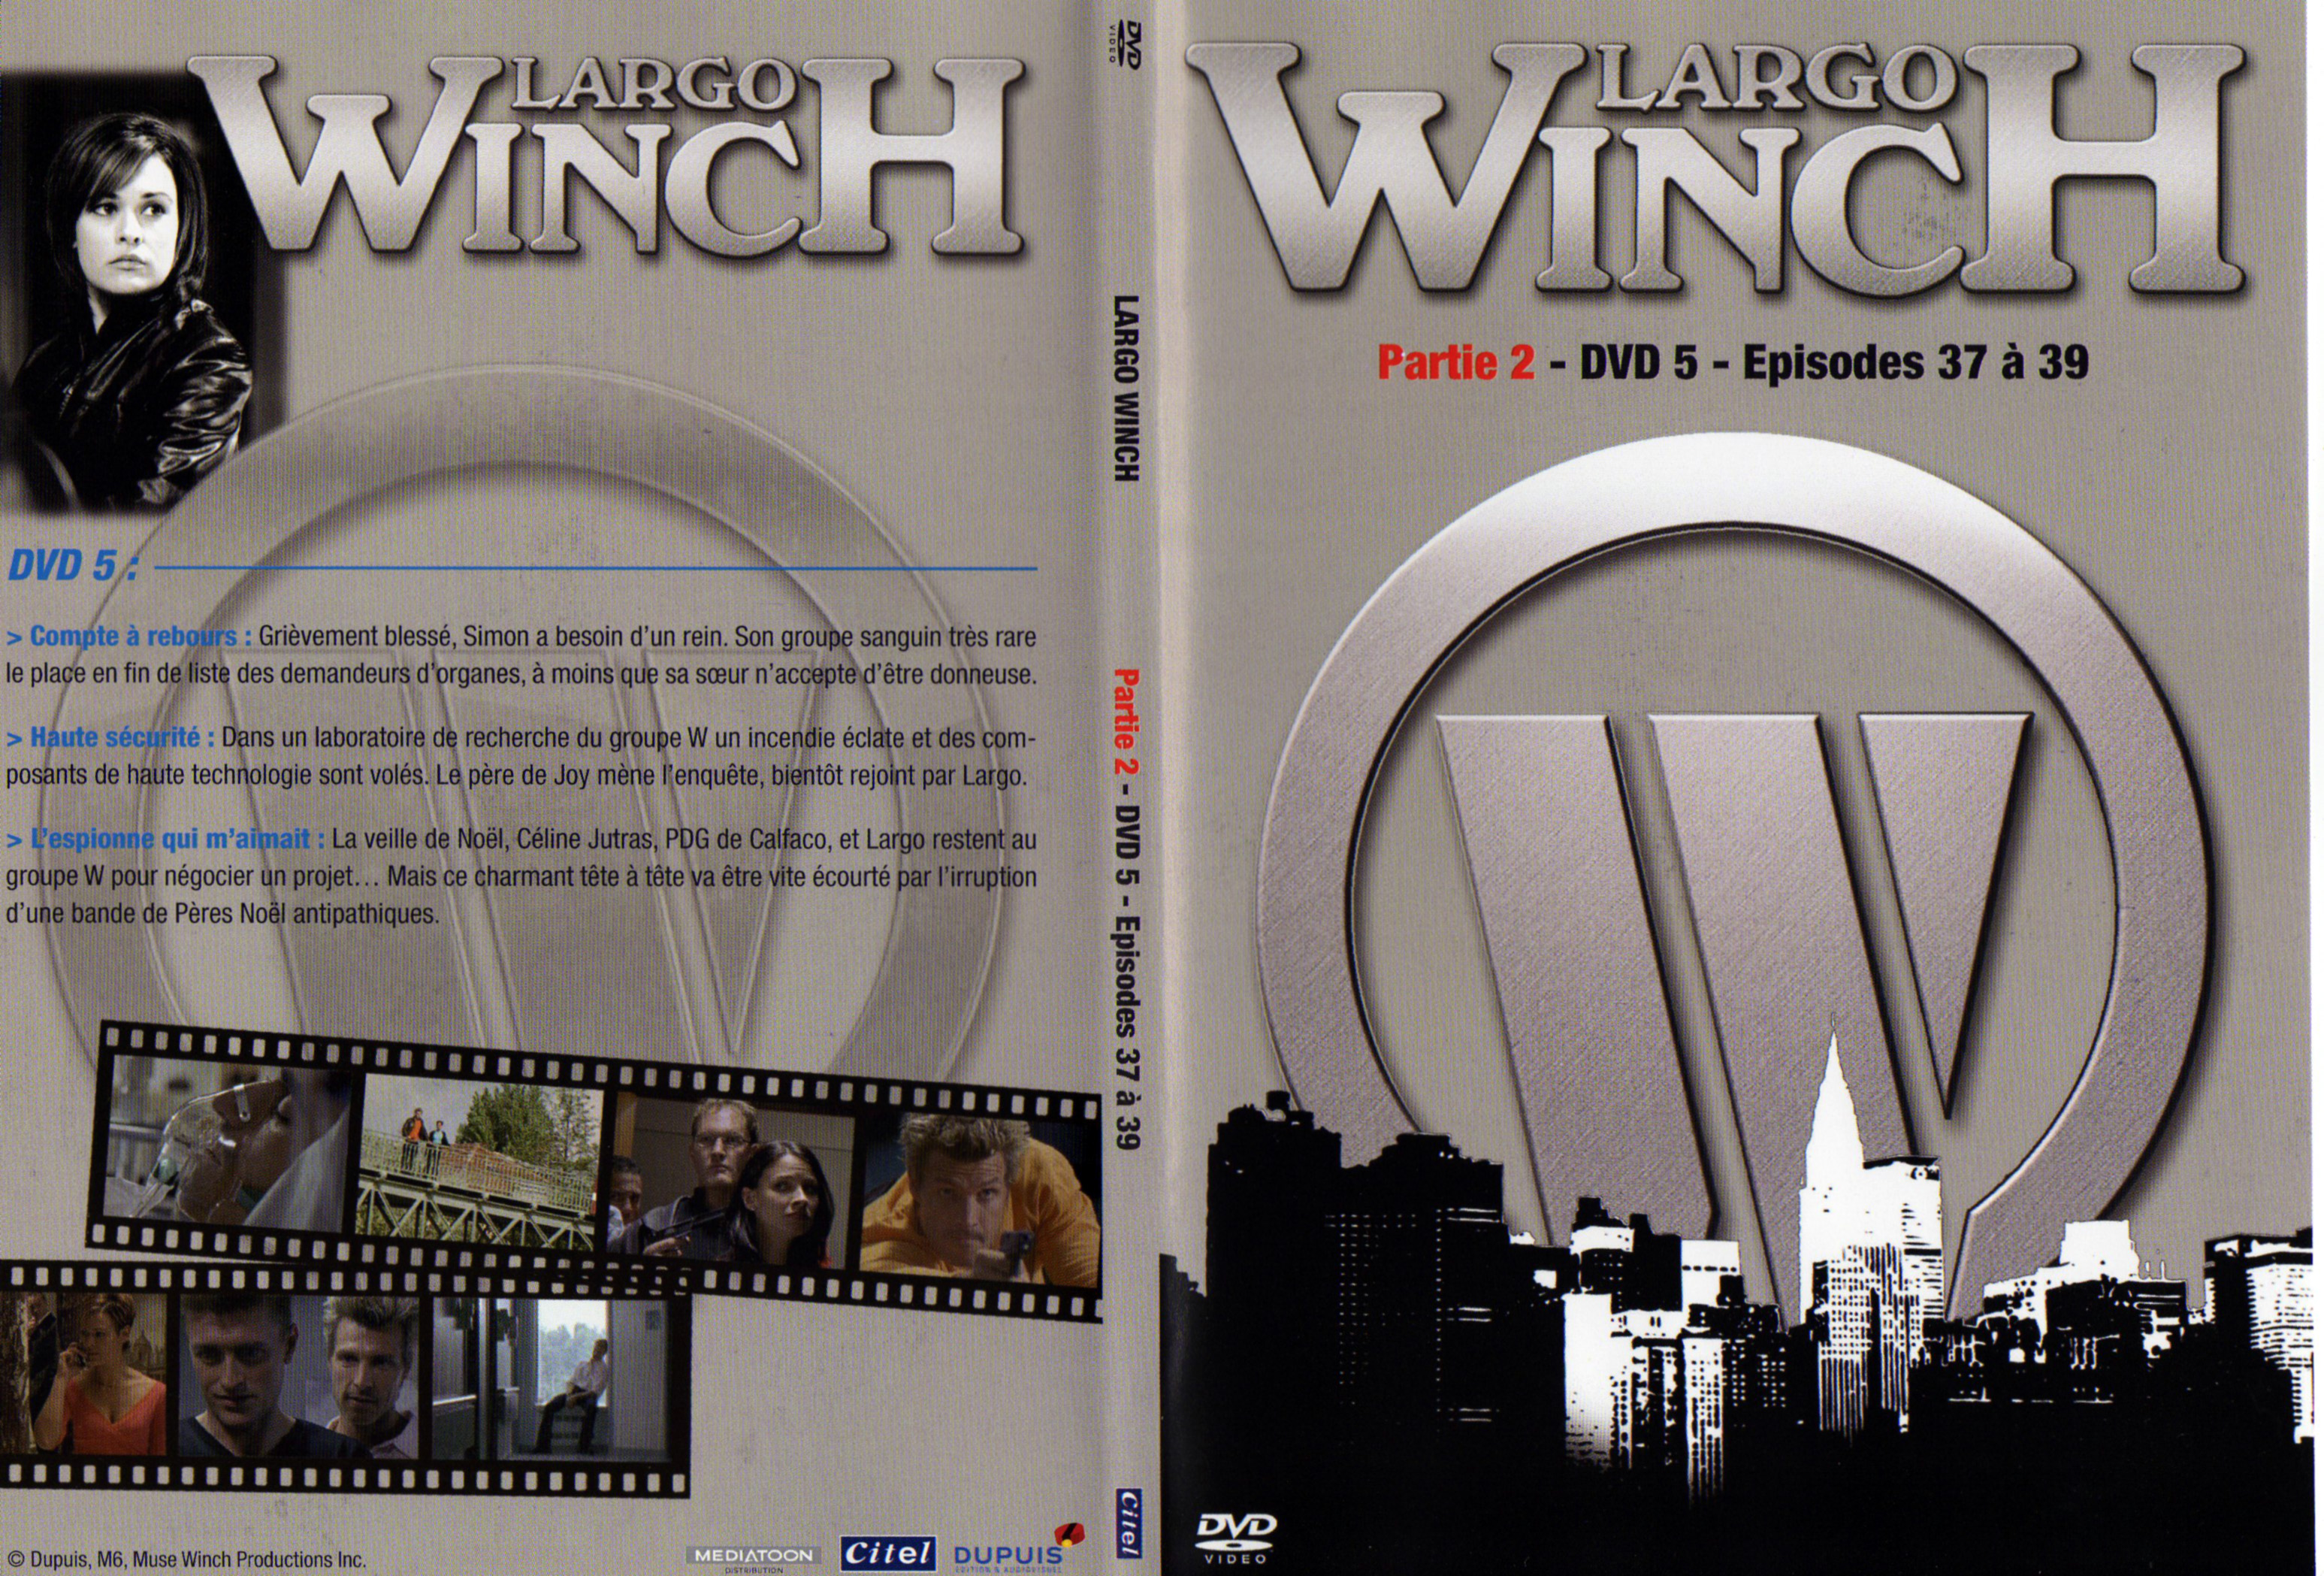 Jaquette DVD Largo Winch Partie 2 DVD 5